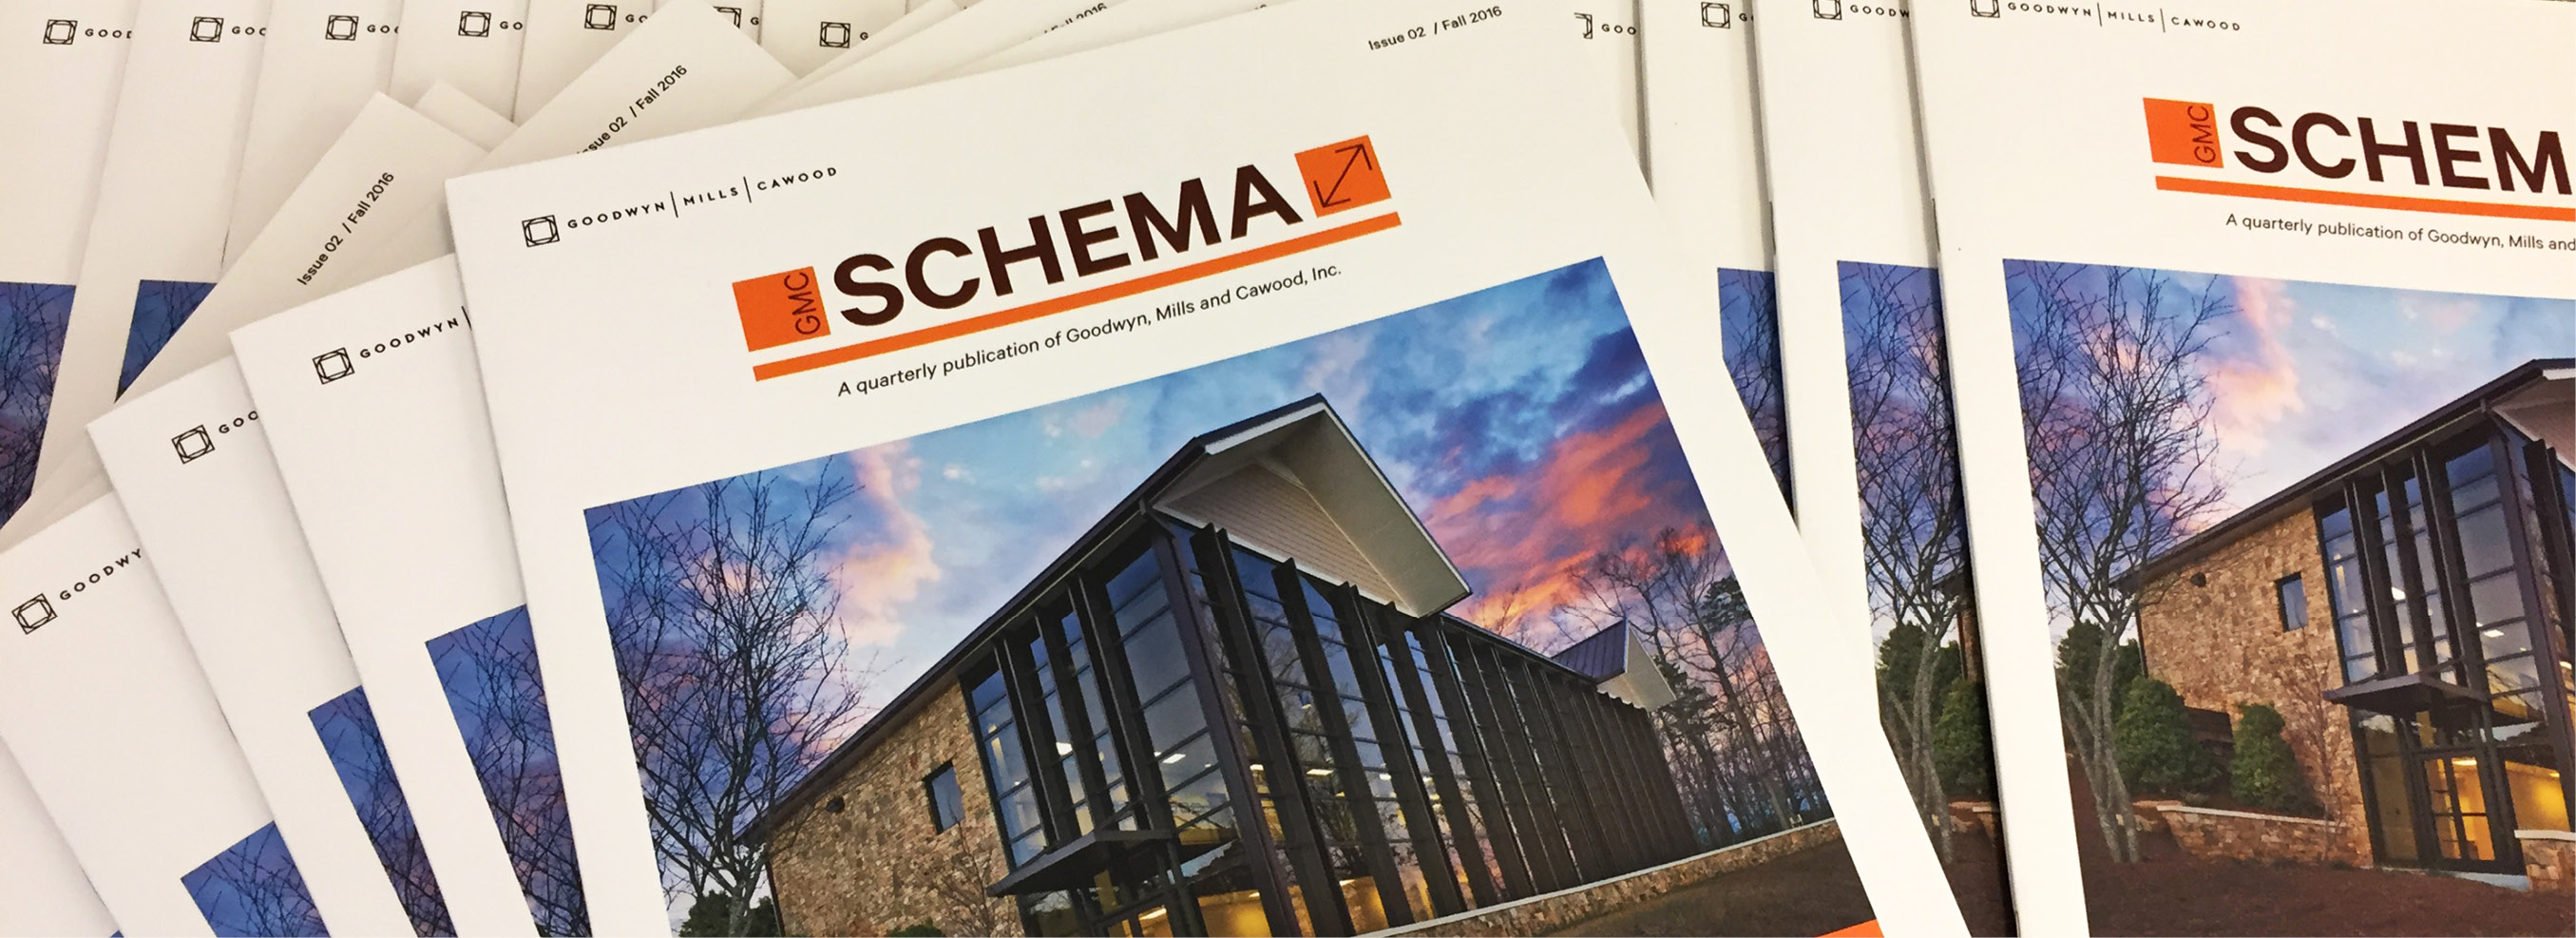 Schema Issue 02 Feature Image